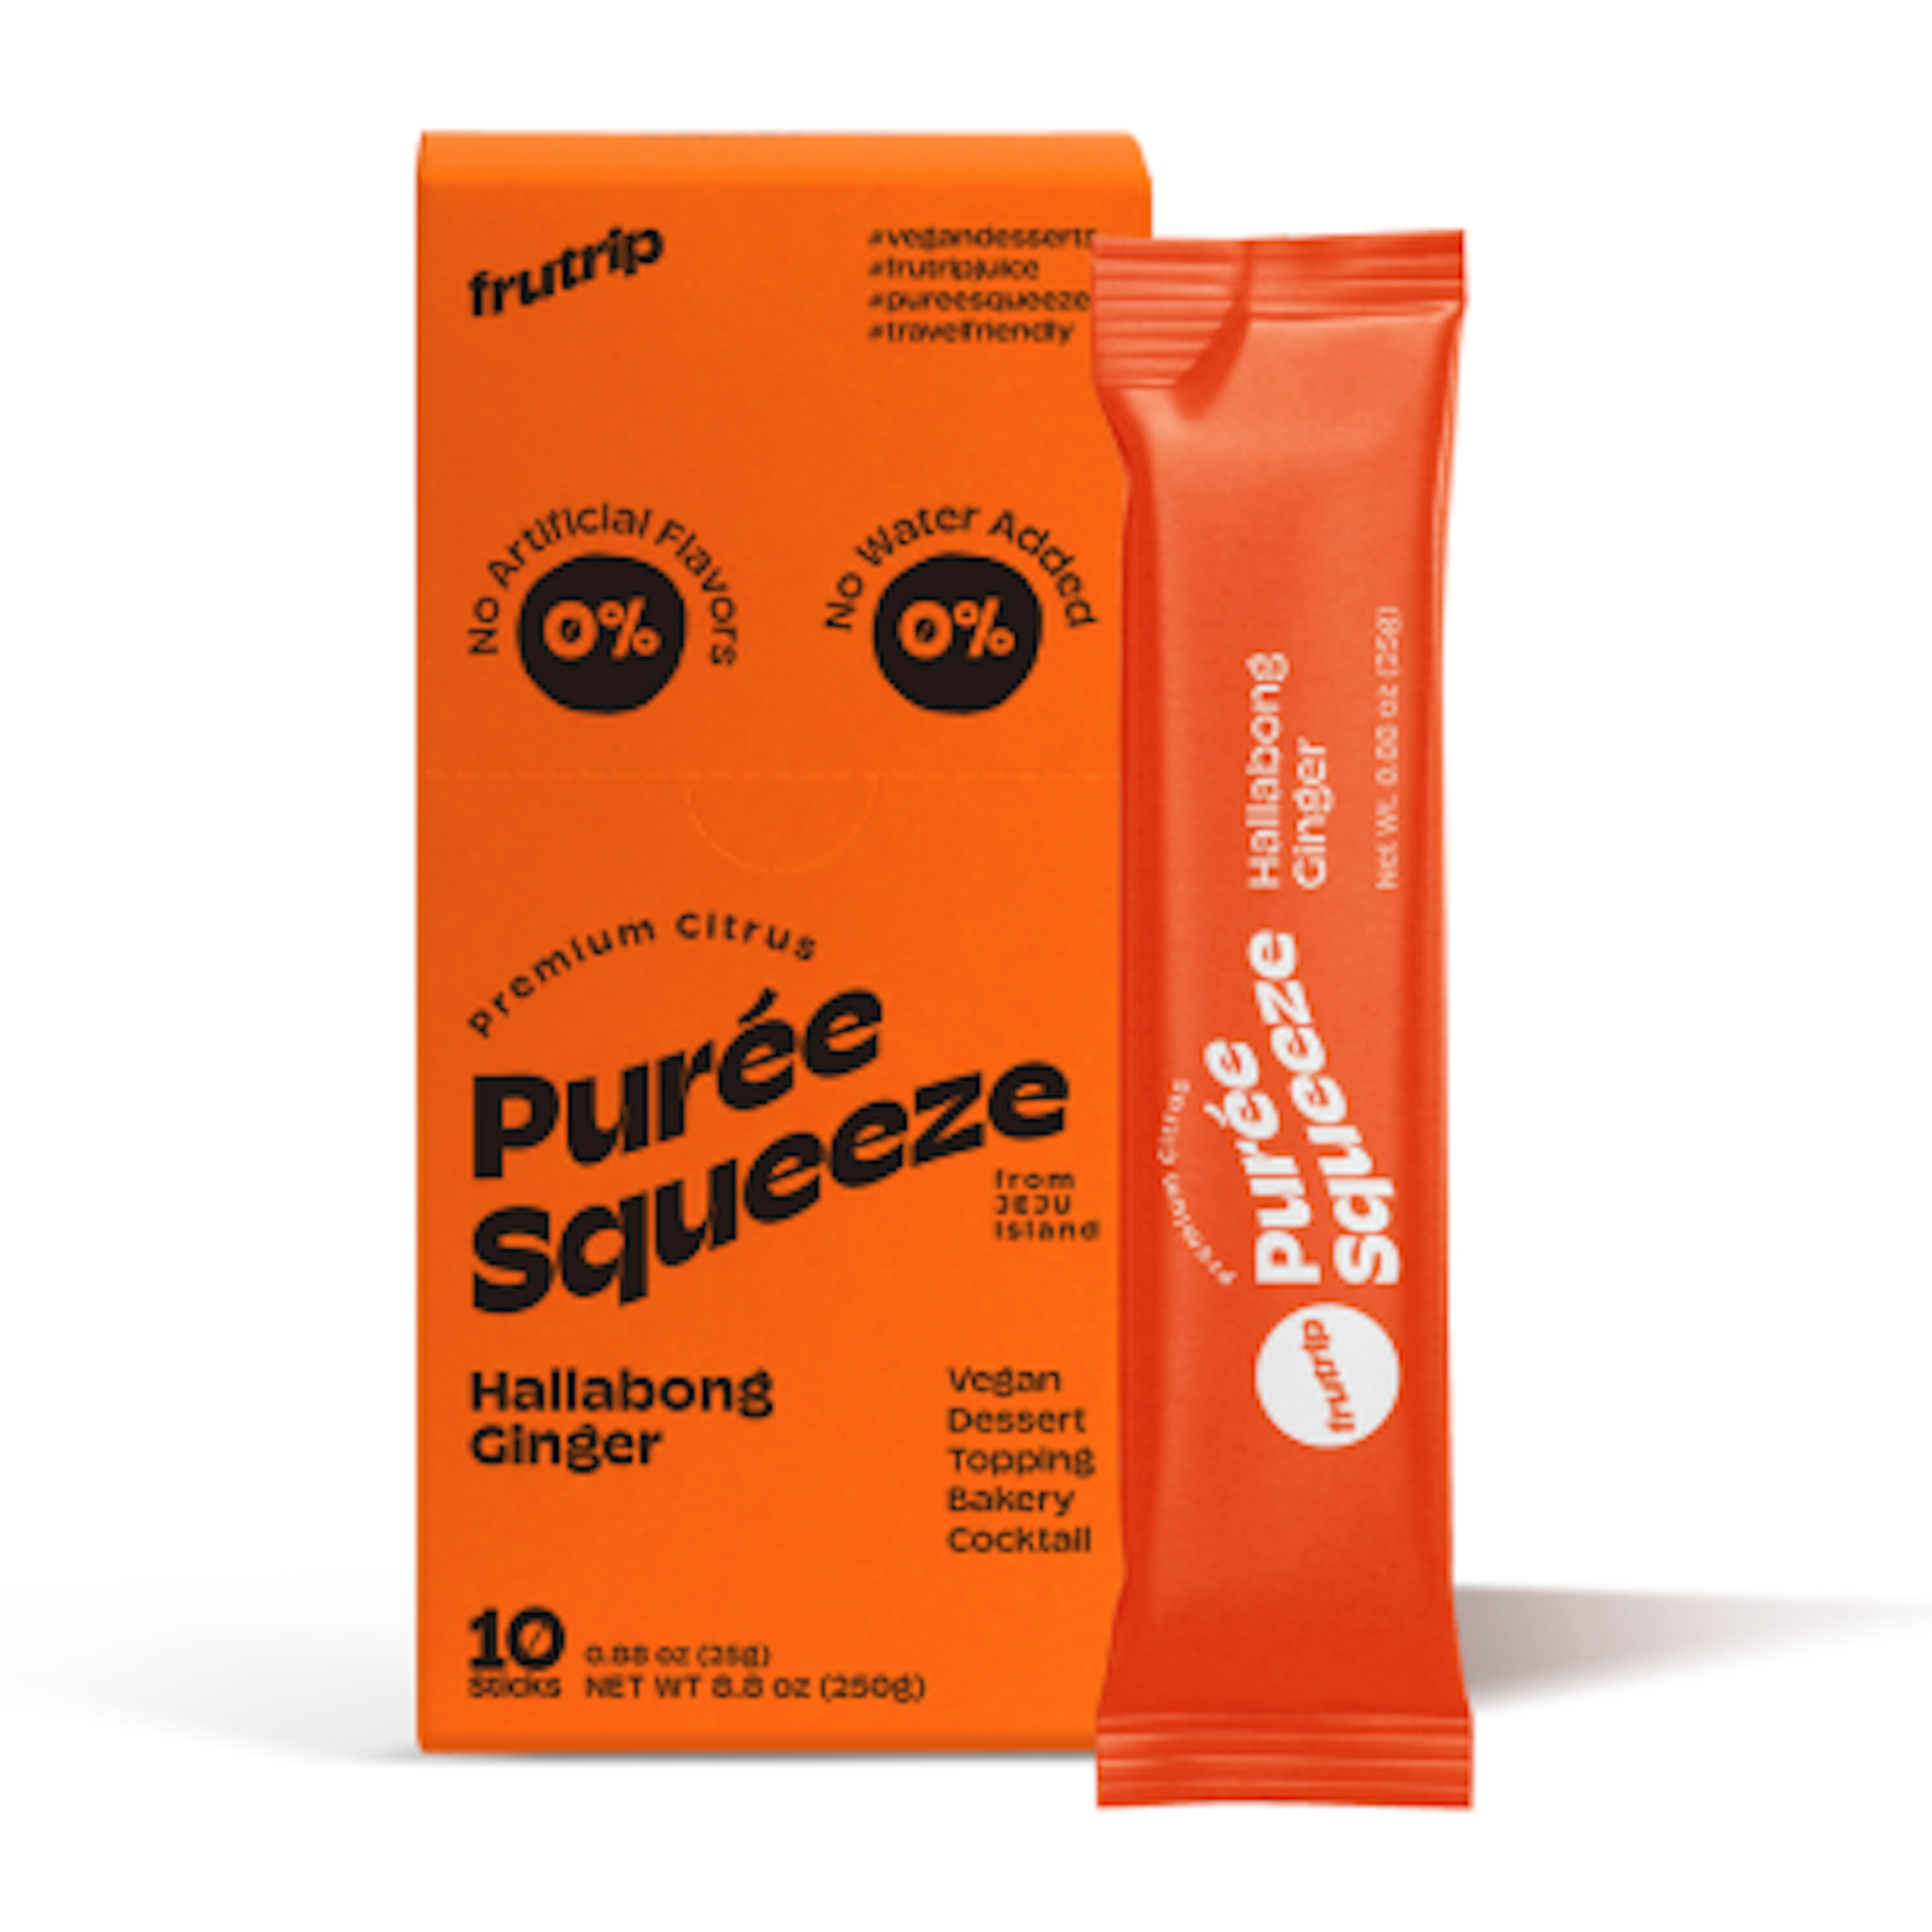 Frutrip Puree Squeeze Hallabong & Ingwer 250g - Praktisch und gesund